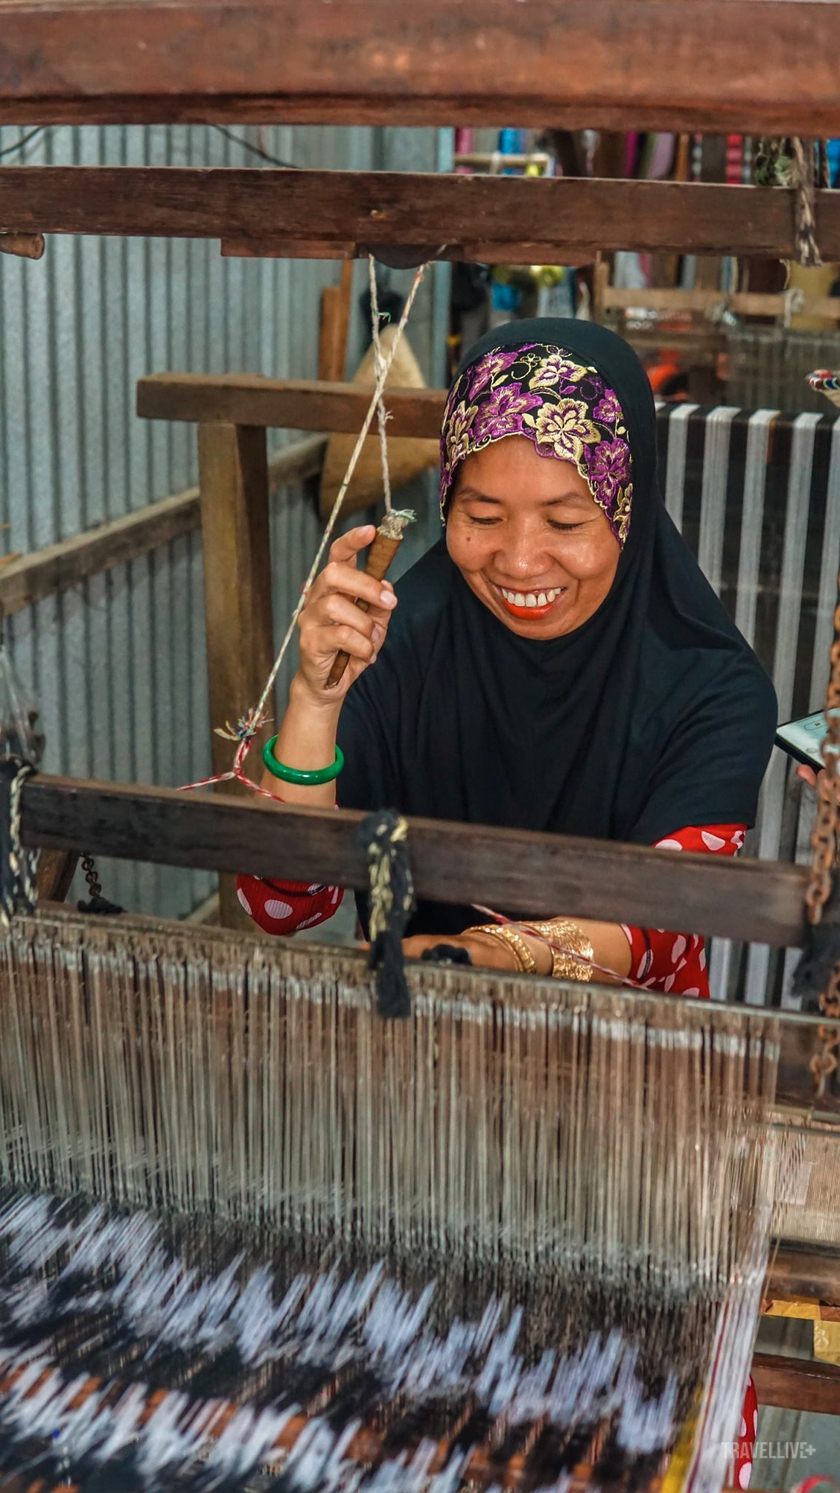 Ha Sa Nah, nghệ nhân dệt vải thổ cẩm đã được hơn 20 năm gắn bó với nghề. Dệt thổ cẩm của người Chăm là một nghề truyền thống lâu đời, đóng vai trò quan trọng trong việc giữ gìn nét đẹp văn hóa đặc trưng của dân tộc